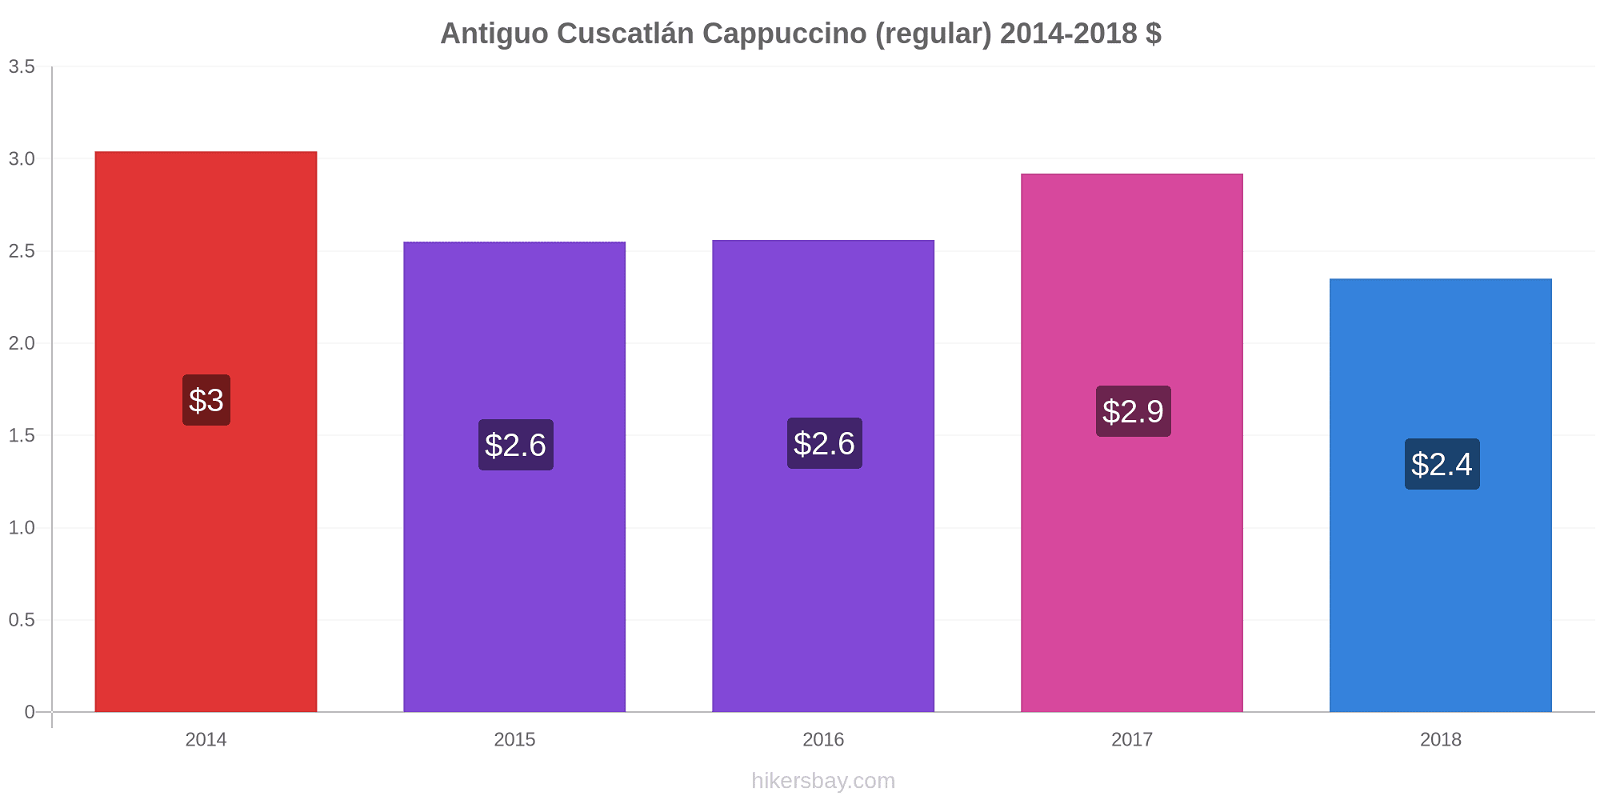 Antiguo Cuscatlán price changes Cappuccino (regular) hikersbay.com